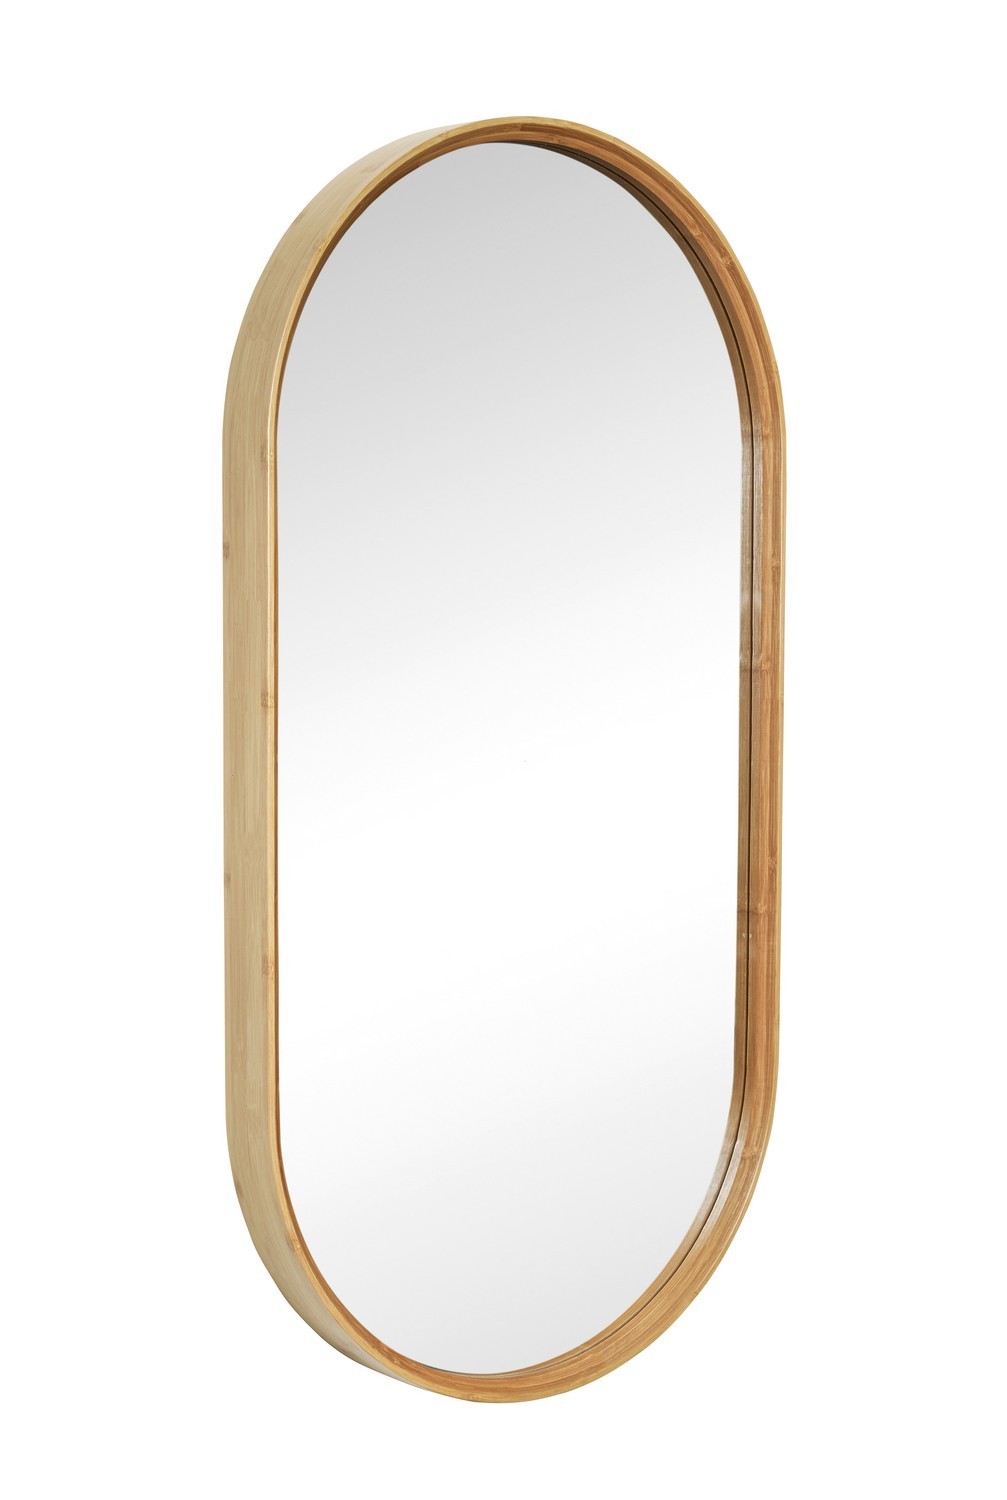 hubsch miroir mural ovale cadre bois de bambou style scandinave - Kdesign